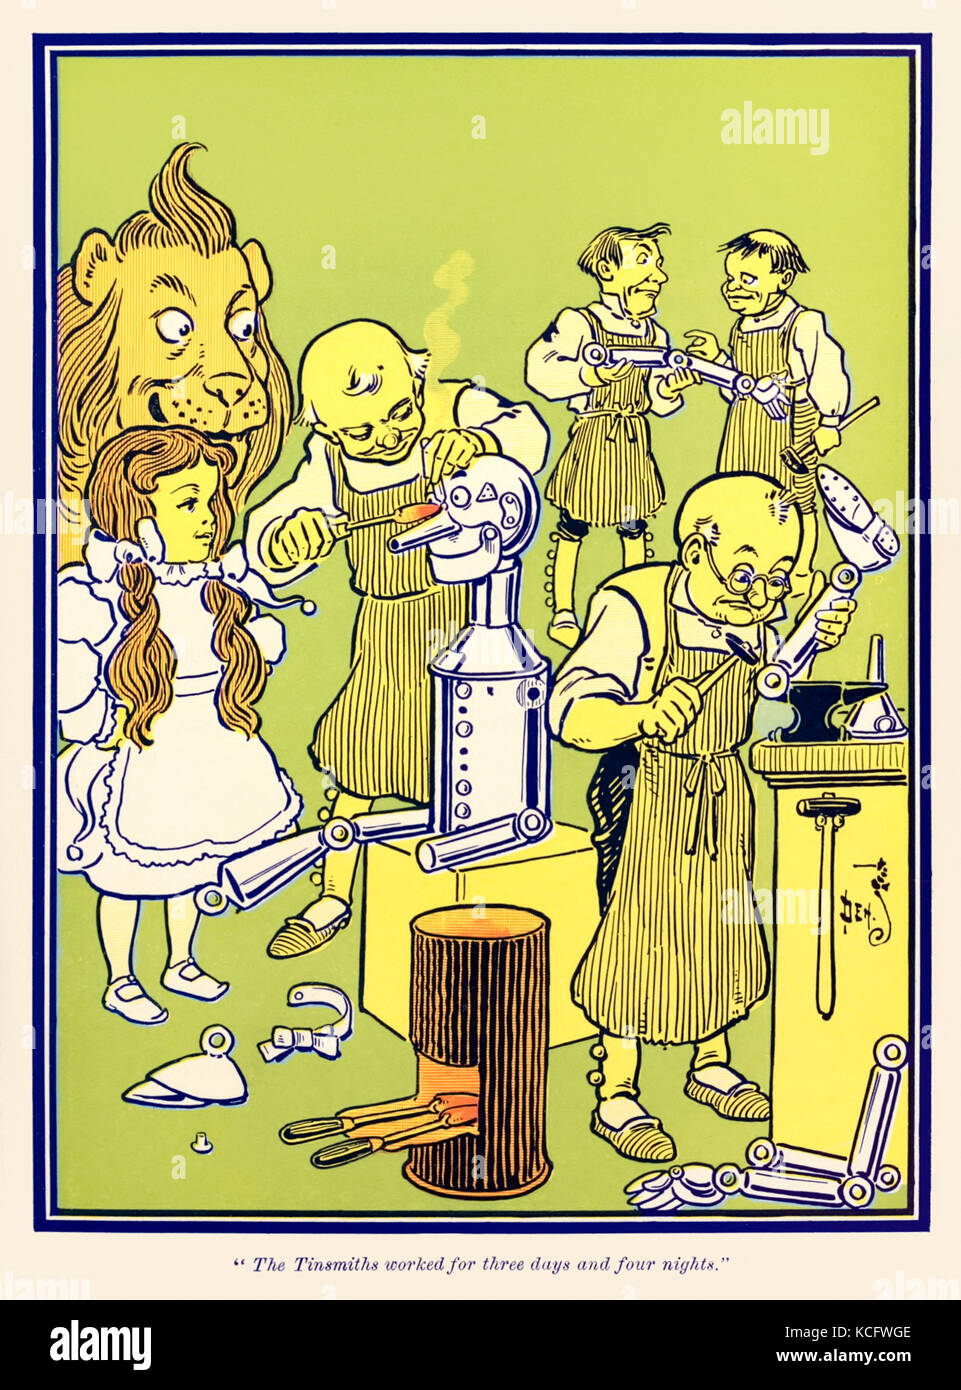 "Die blechschmiede arbeitete für drei Tage und vier Nächte." aus "Der Zauberer von Oz" von L.Frank Baum (1856-1919) mit Bildern von W. W. Denslow (1856-1915). Weitere Informationen finden Sie unten. Stockfoto